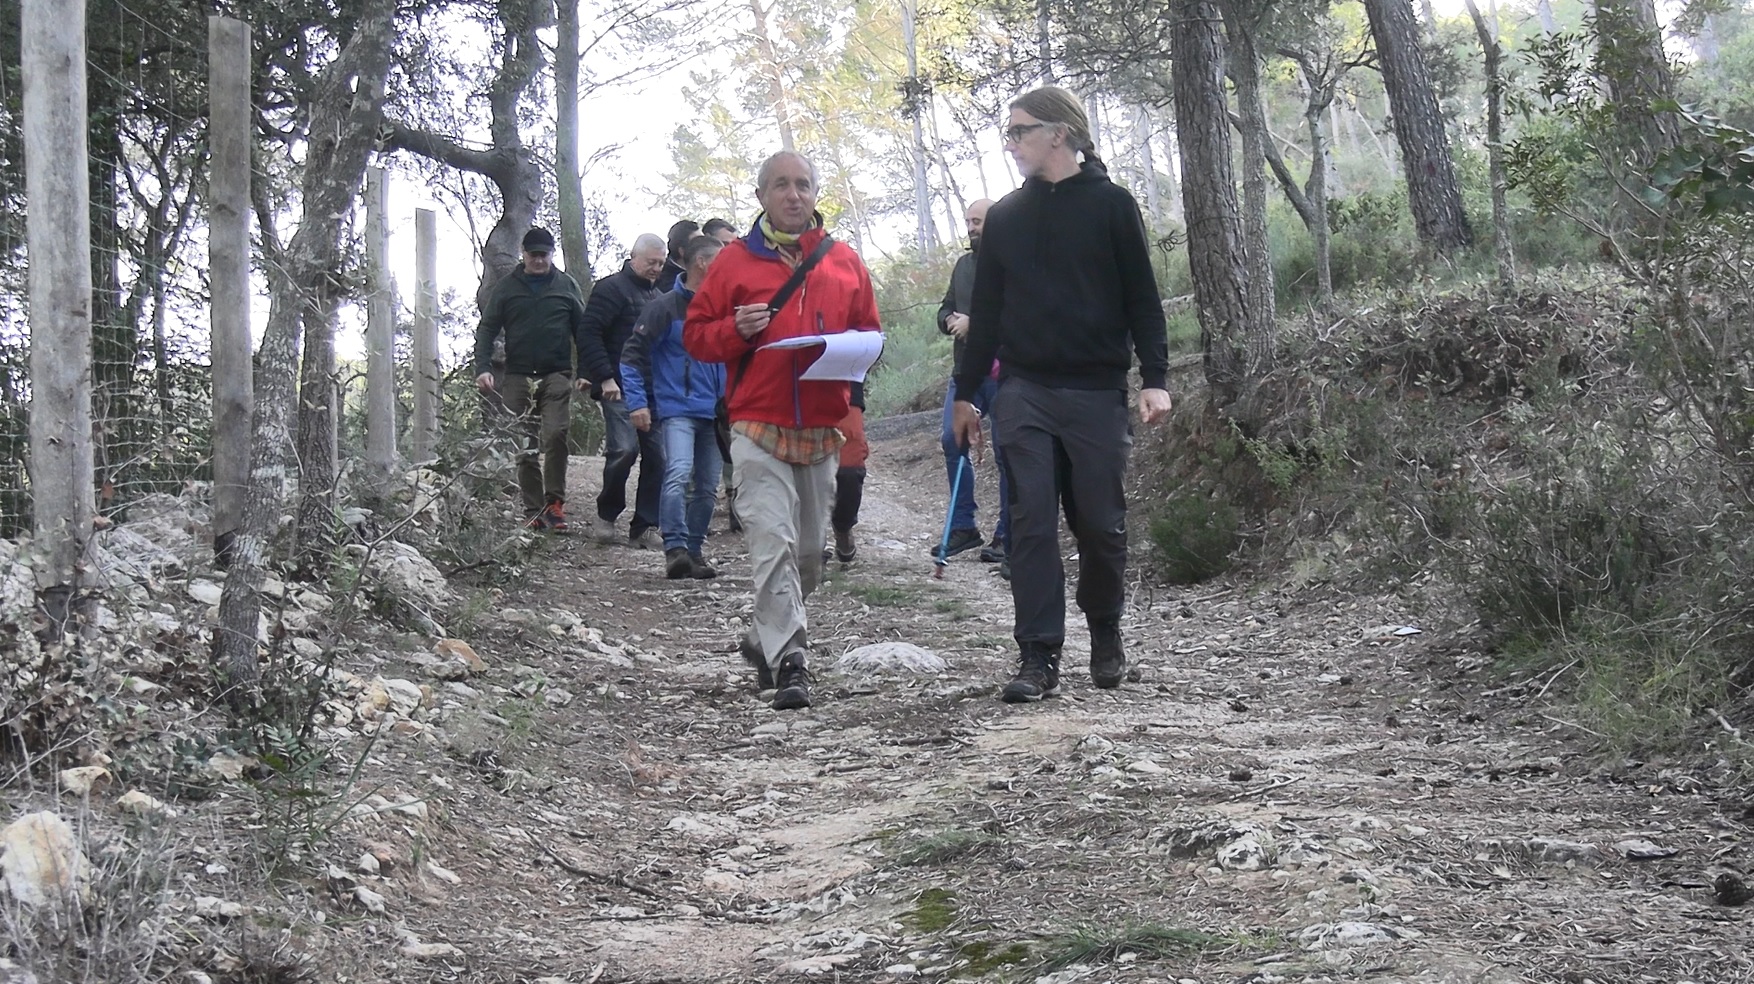 Recuperat un antic camí de Palma a Puigpunyent que connecta amb la Ruta de Pedra en Sec